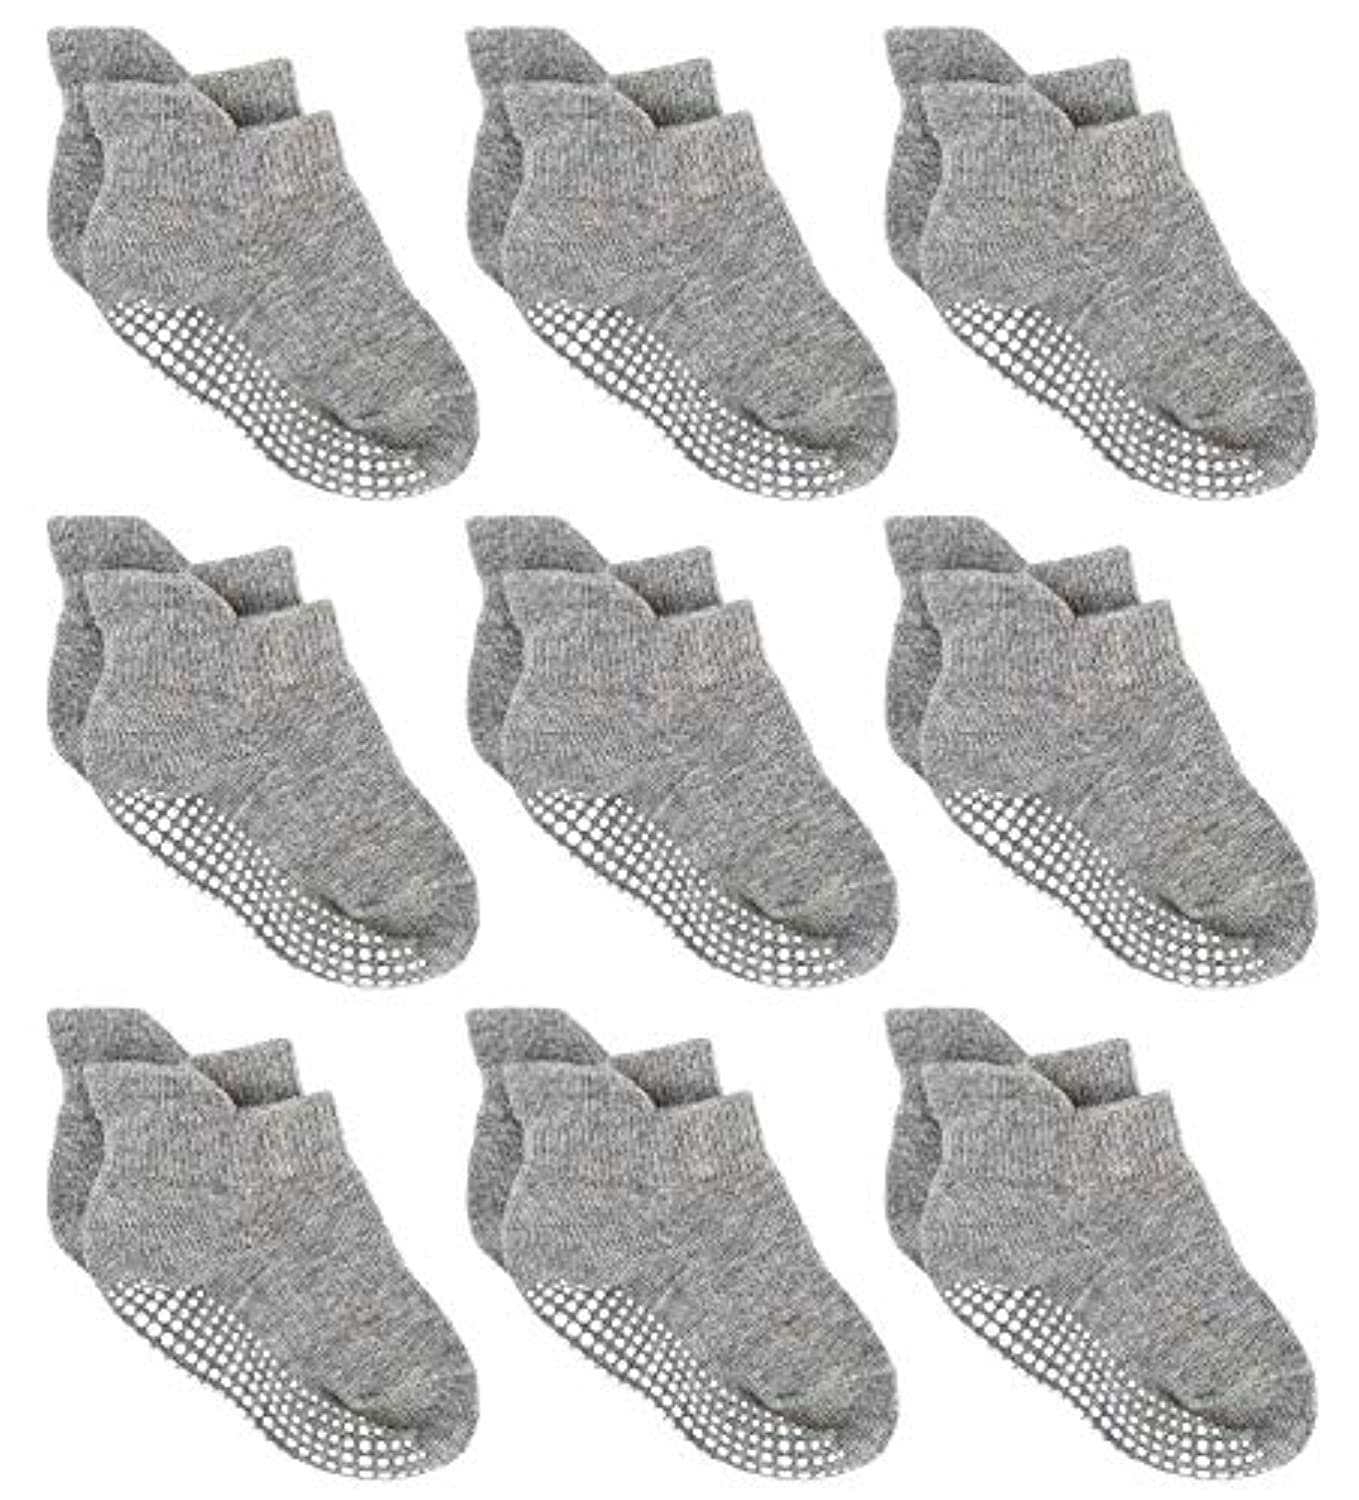 Boys 6 Pack Non Slip Baby Socks for 0-24M Newborn Bebe Girls Grips Anti Skid Ankle First Walker Infant Kids Cotton Sock 2021